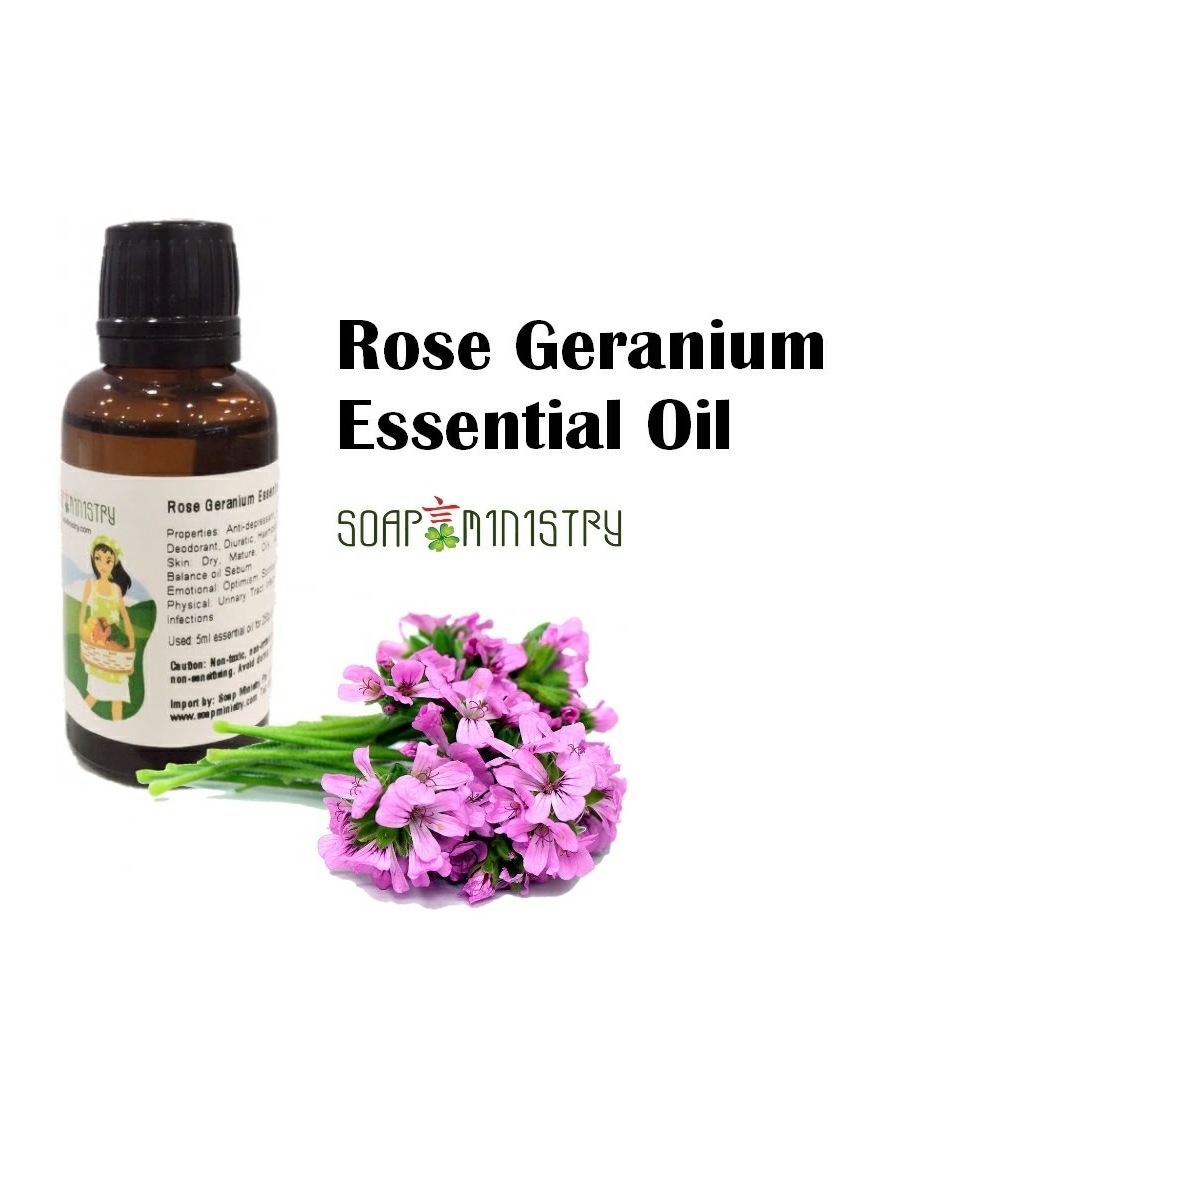 Rose Geranium Essential Oil 1L